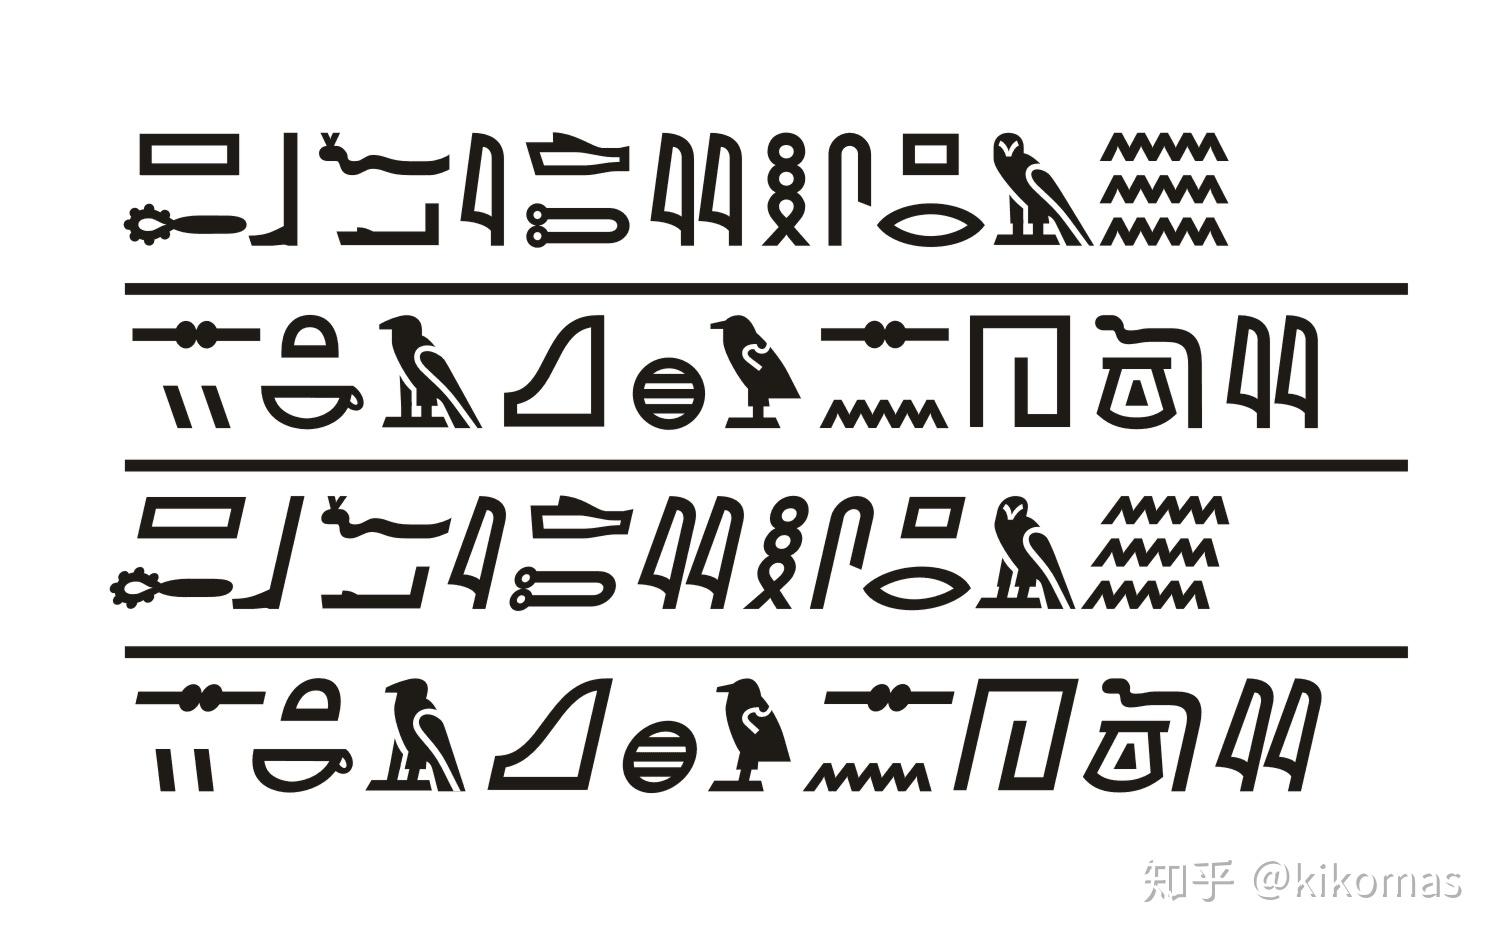 如果埃及文字楔形文字玛雅文字民族内普及化并使用至今并适应了纸笔